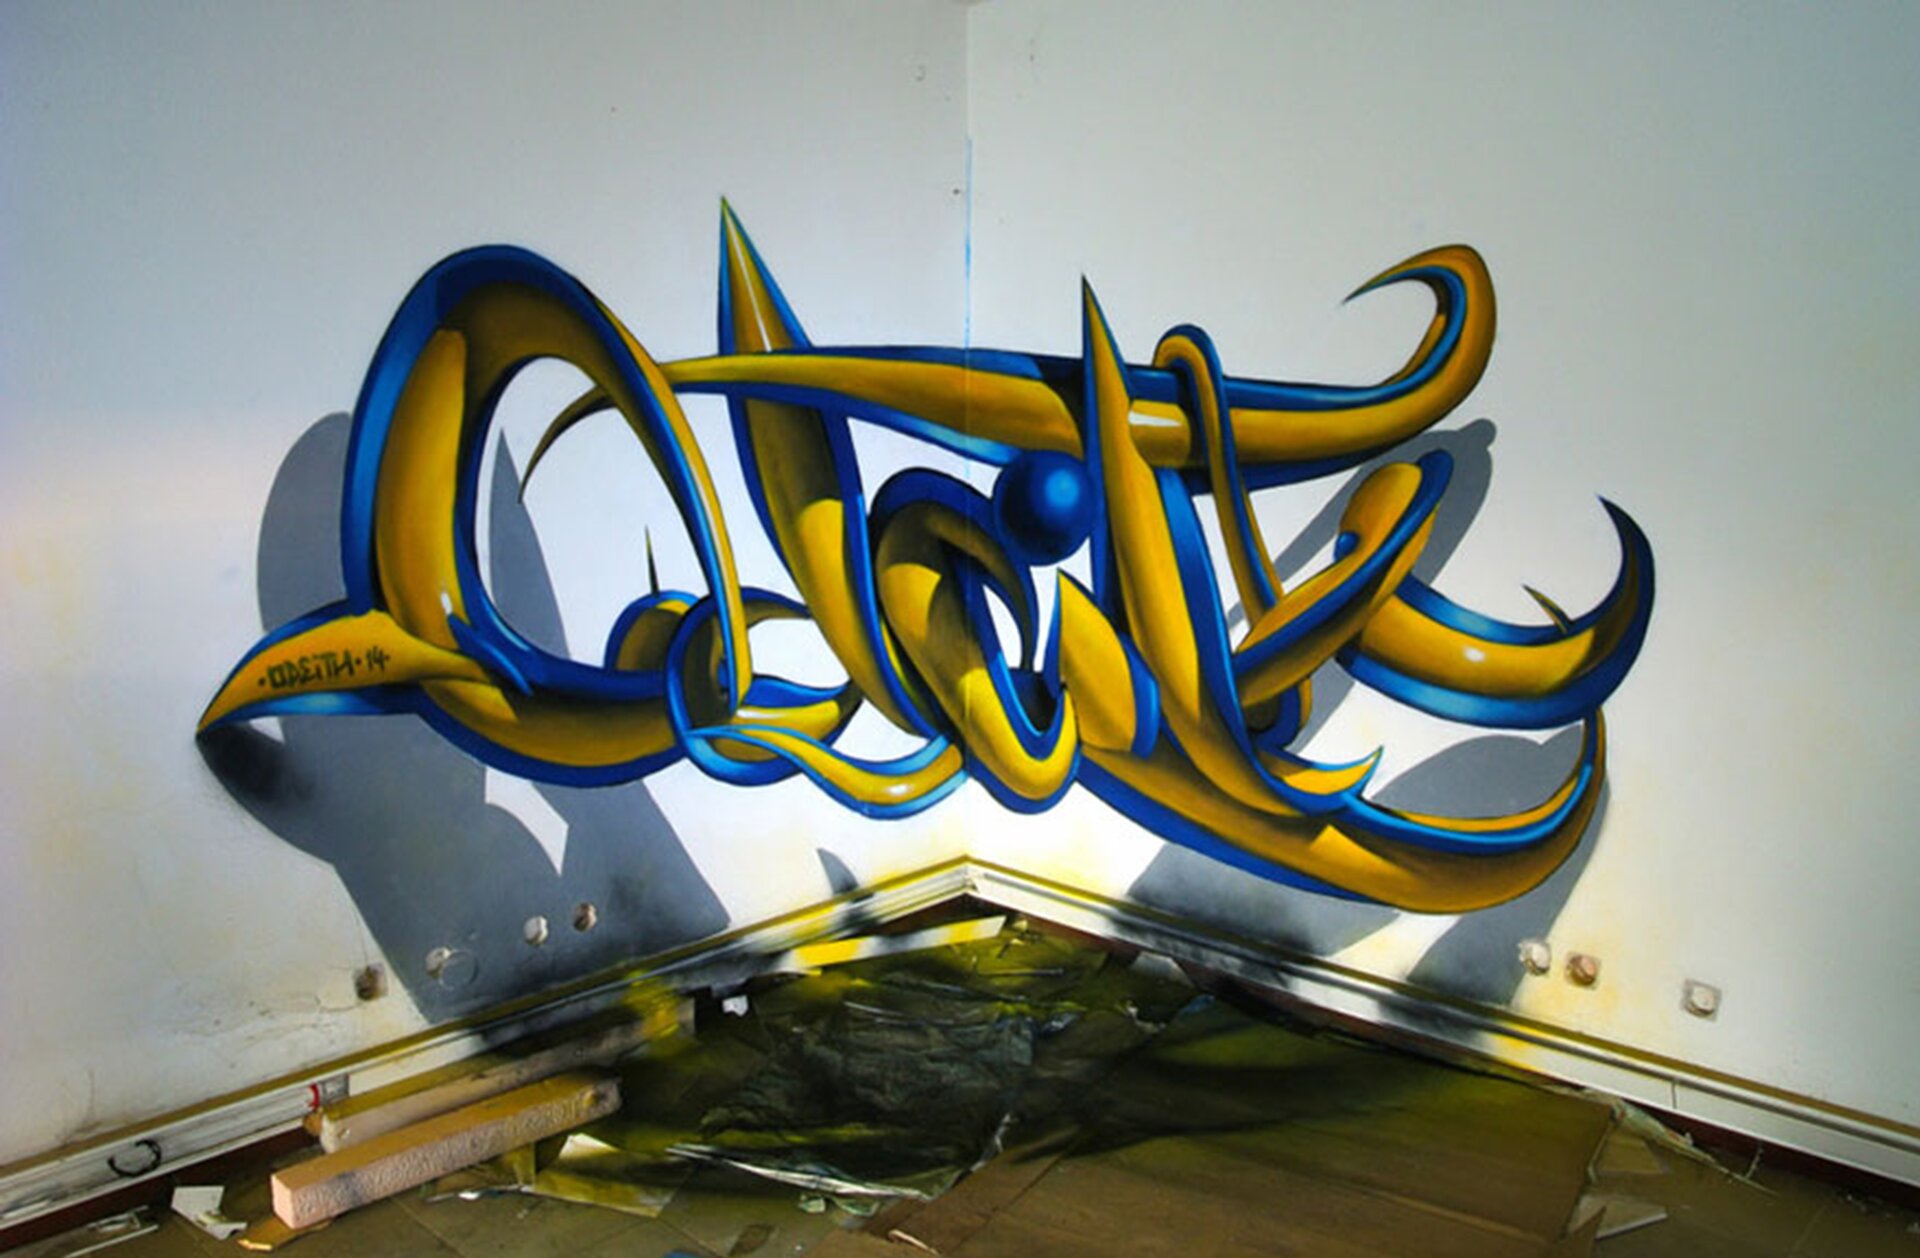 Ilustracja przedstawia graffiti Sergio Odeith'a. Ukazuje żółty napis z niebieskim konturem zamieszczony w rogu ściany w taki sposób, że tworzy efekt trójwymiarowy. Na ścianie i podłodze został namalowany cień napisu.